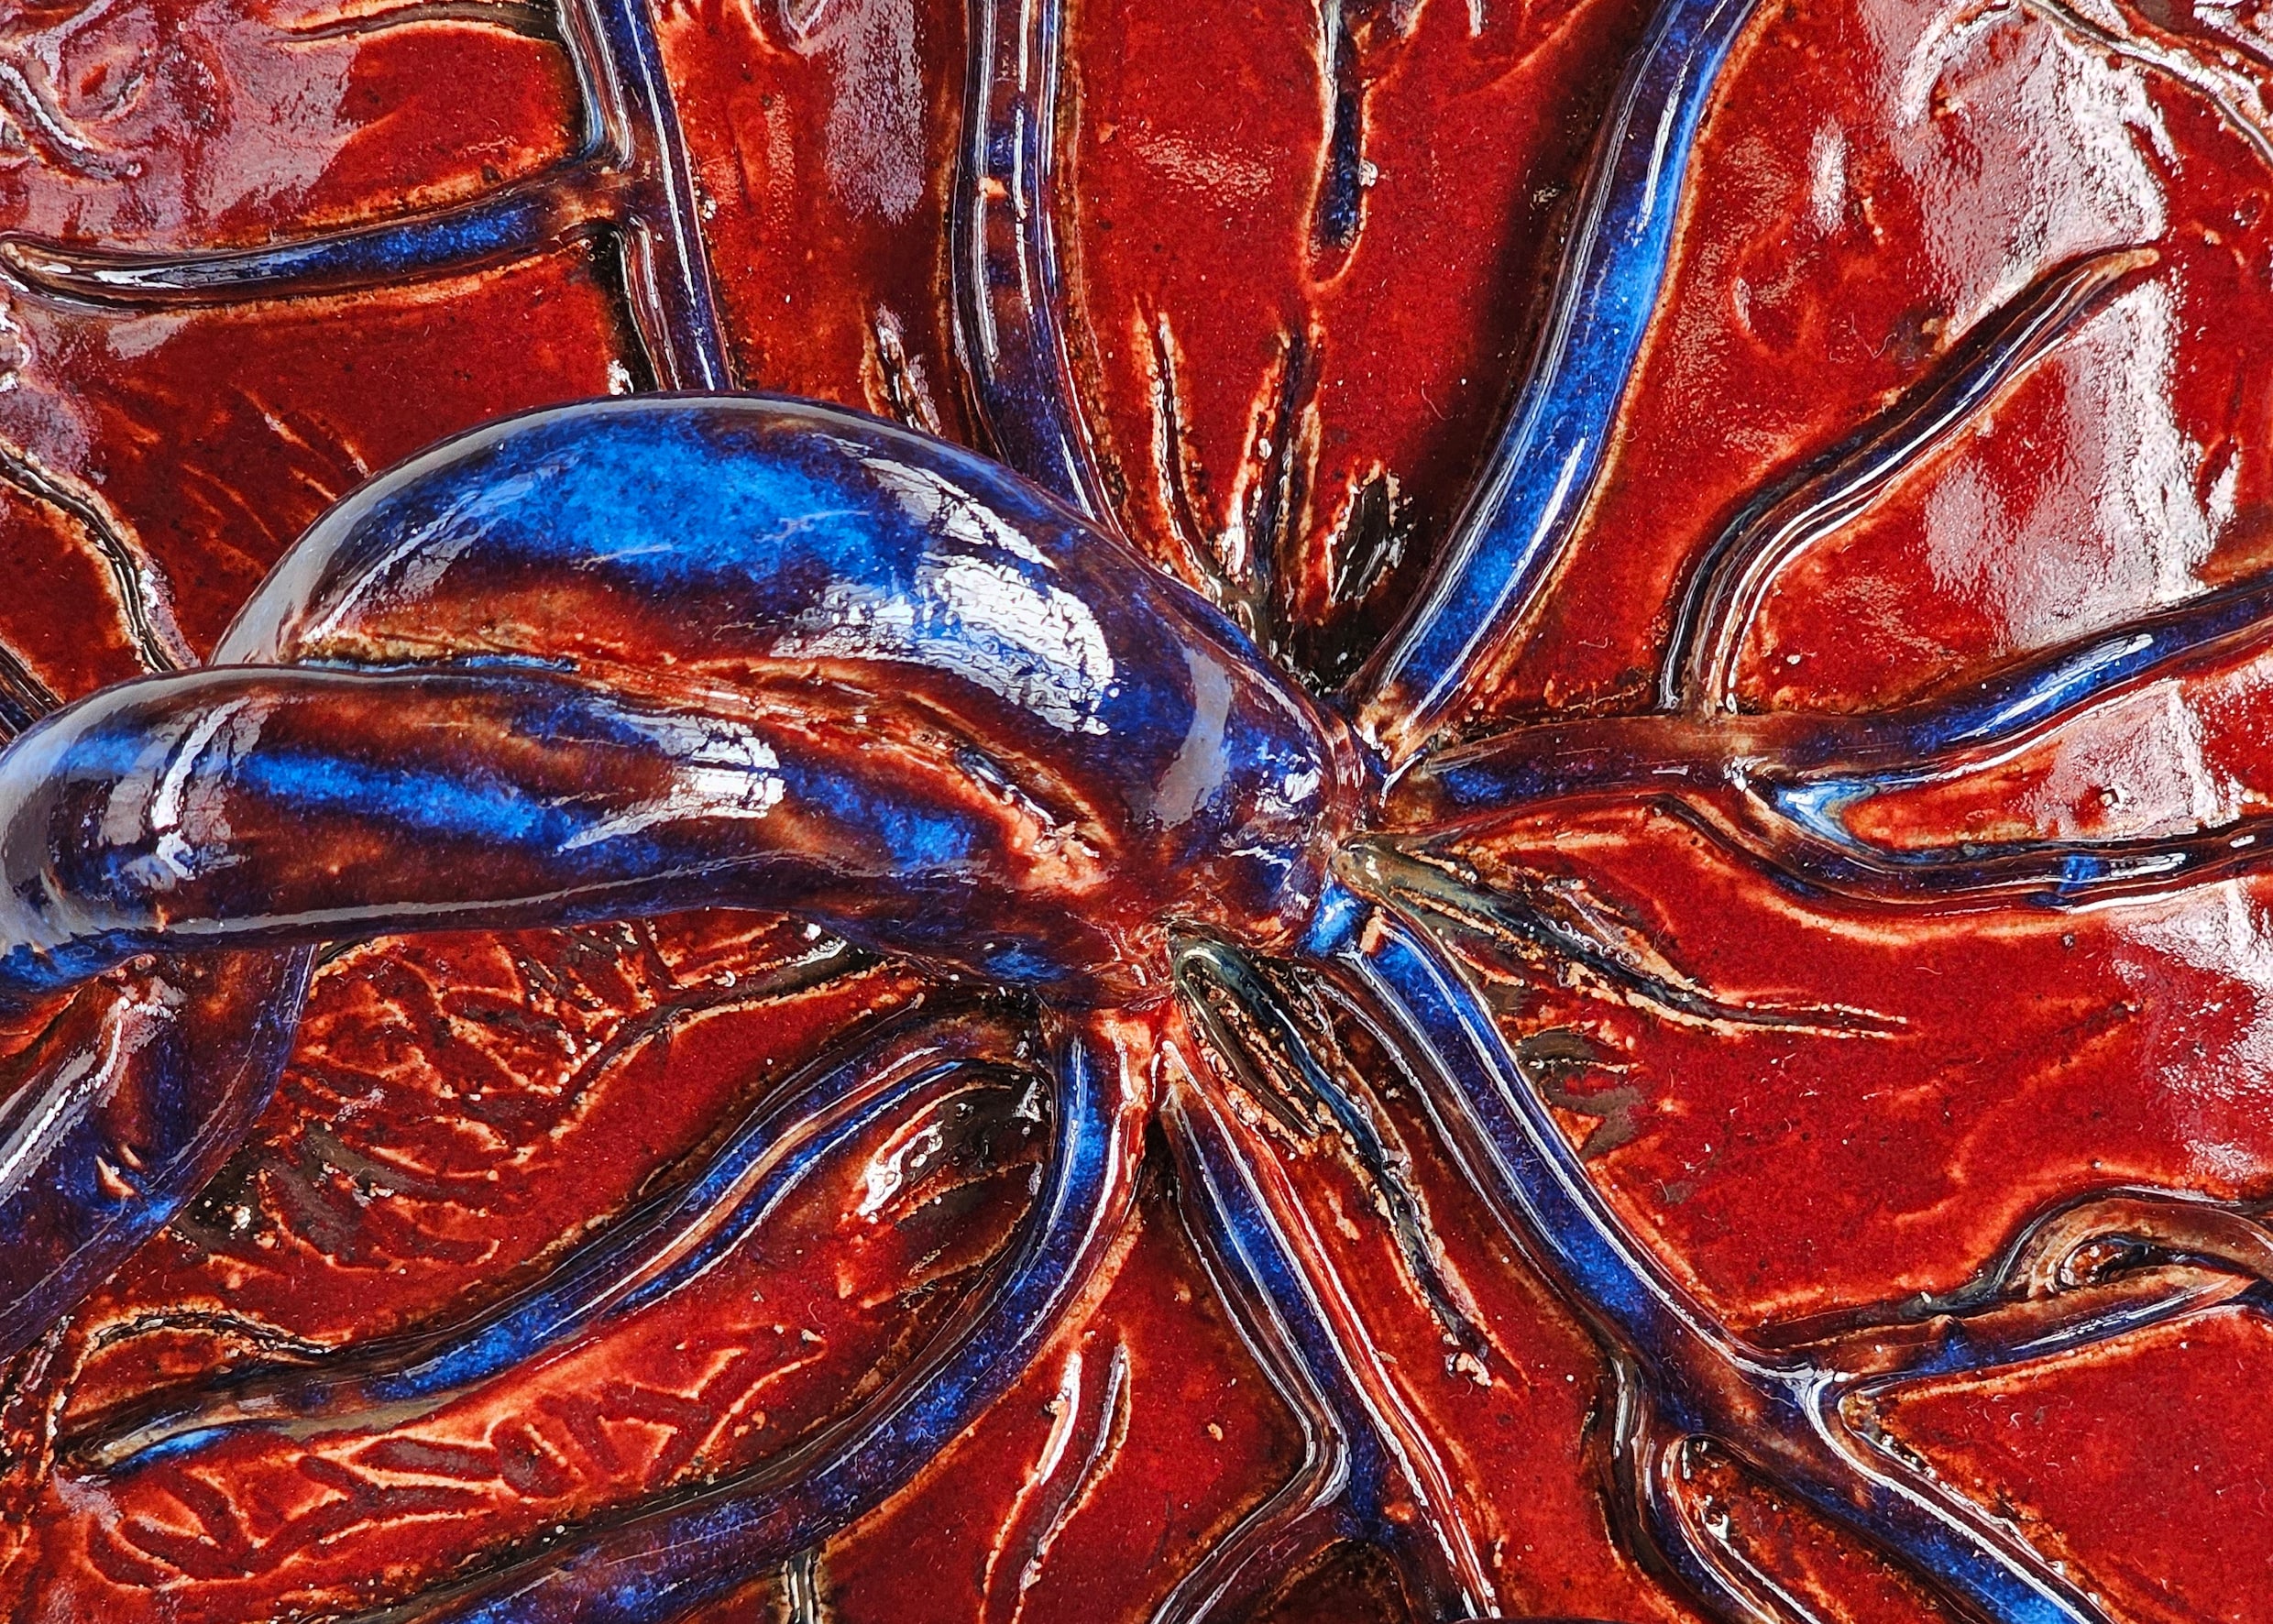 Kunstenaar eert de moederkoek: Farah Widmer maakt fascinerende placenta’s van keramiek